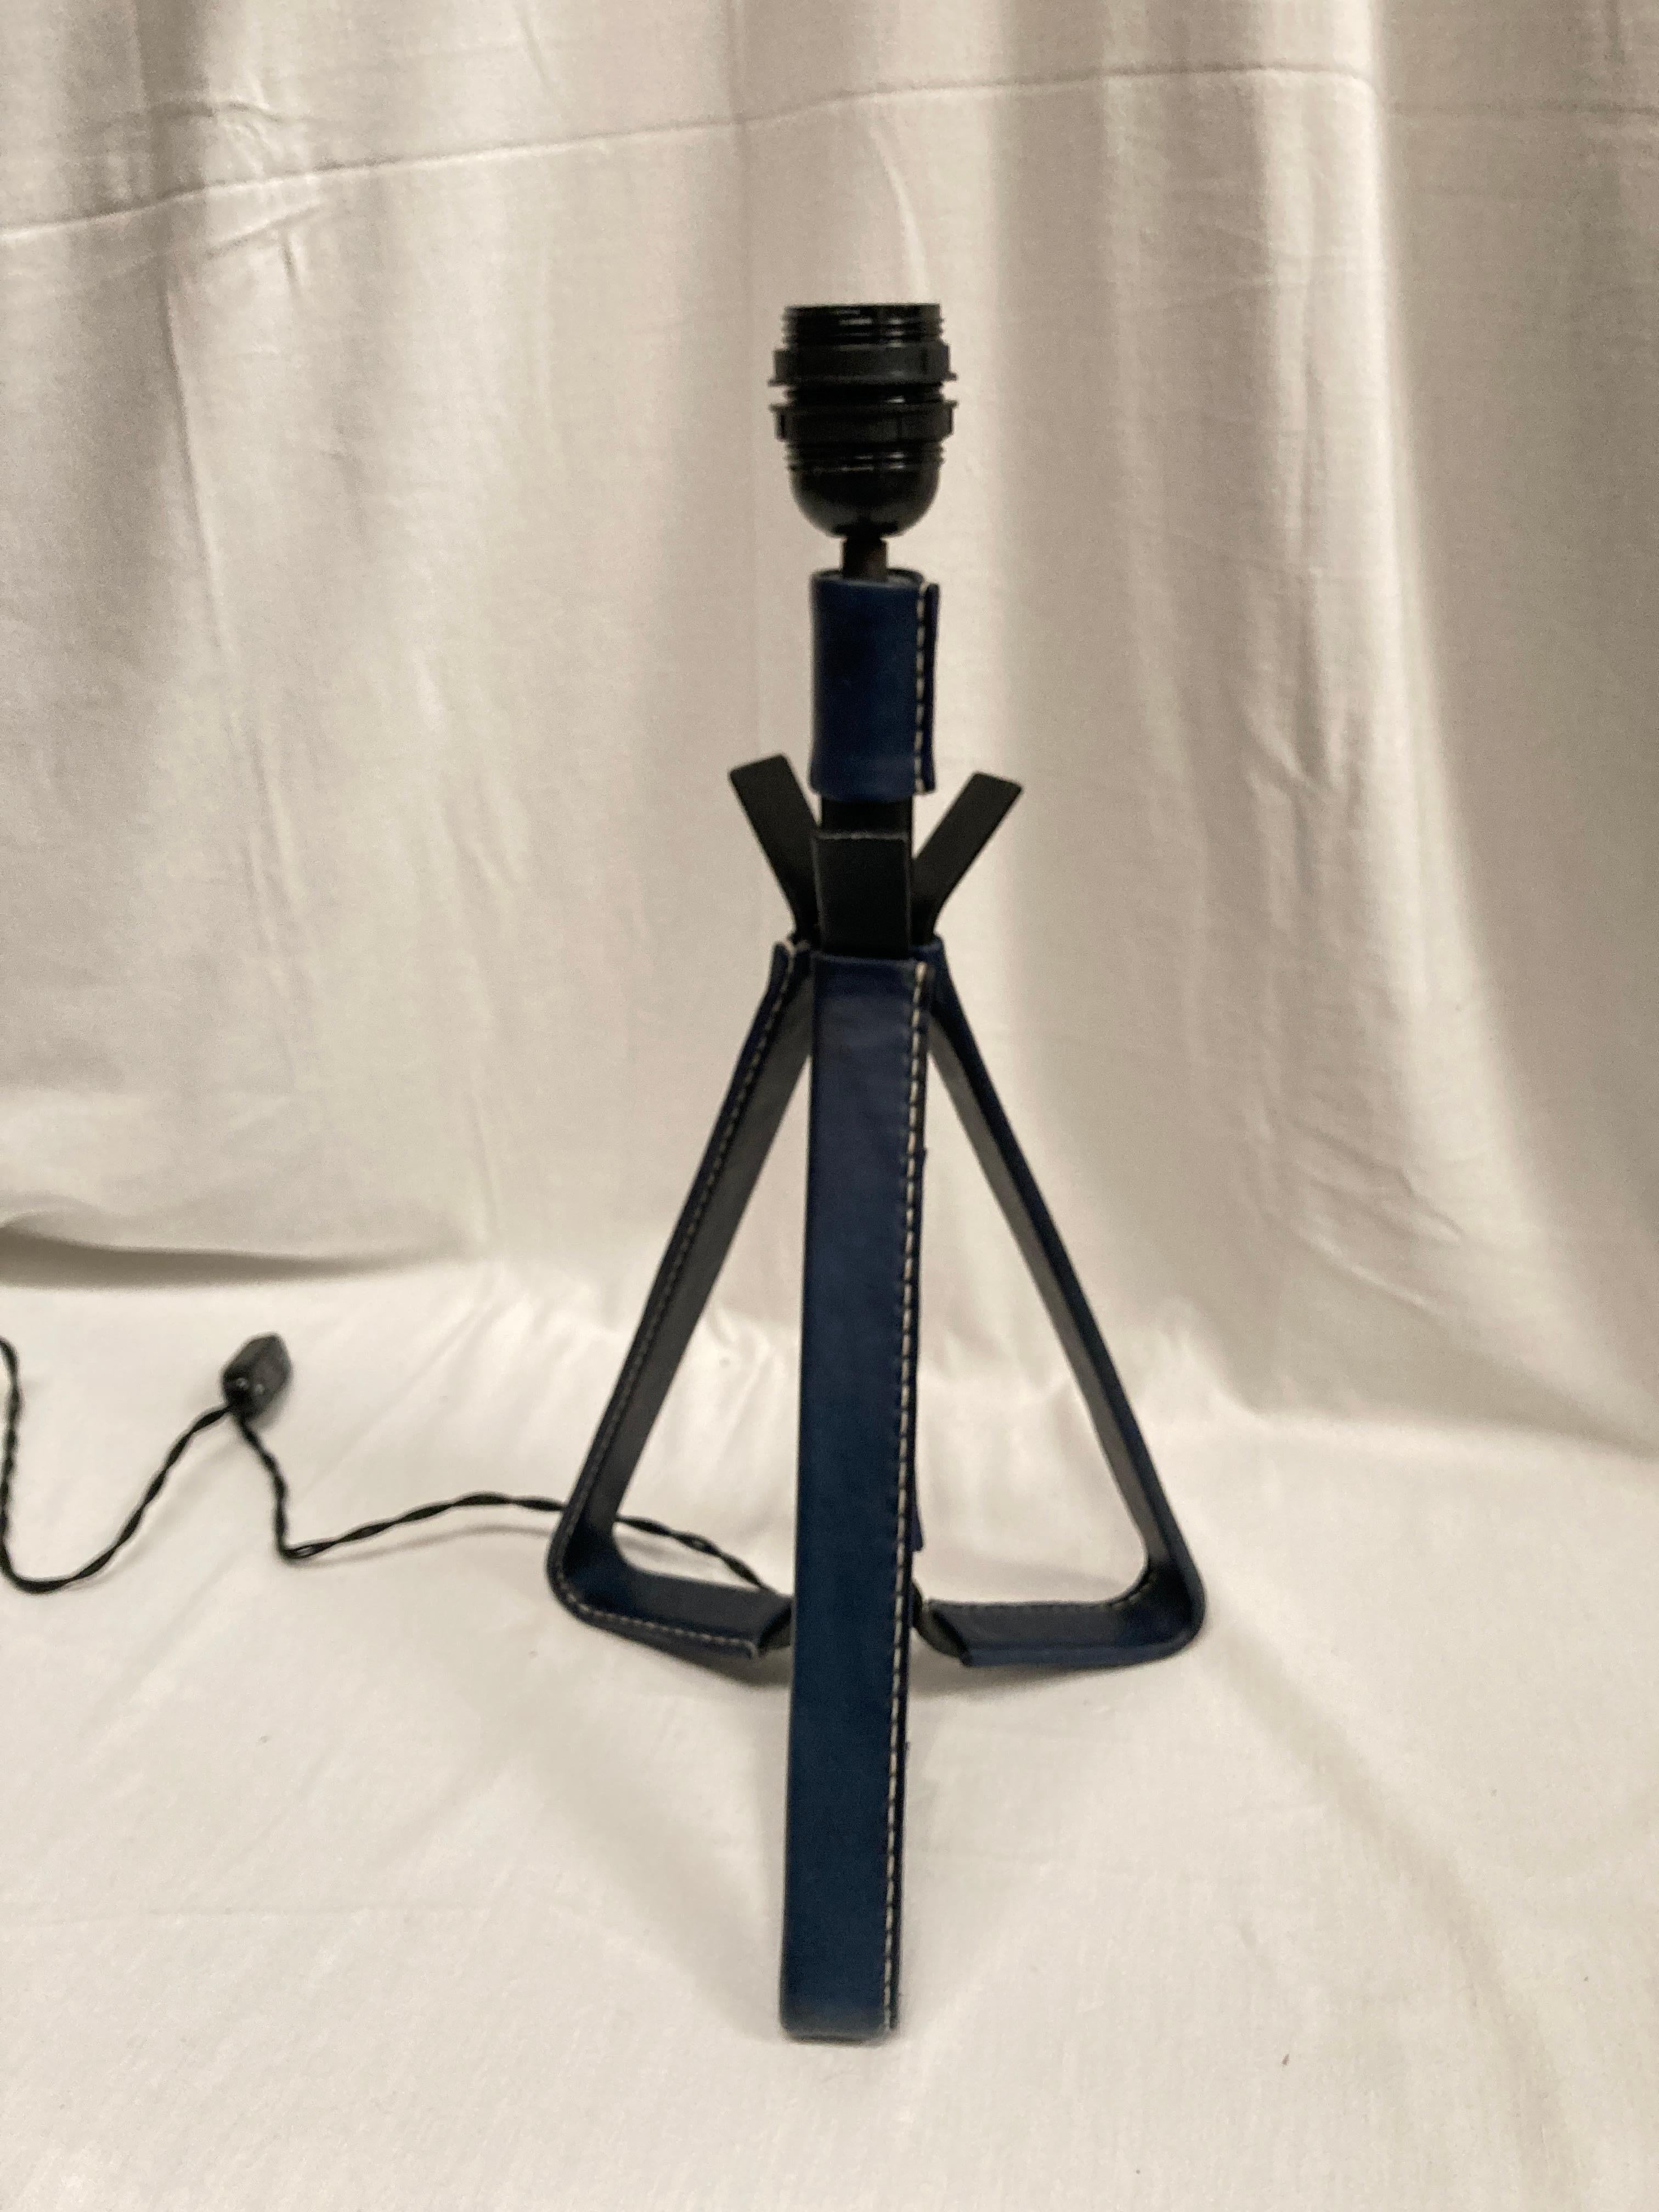 Dies ist eine seltene genähte Lederlampe, deren flacher Teil mit dunkelblauem Leder bezogen ist.
Maße ohne Schirm angegeben
Kein Schatten enthalten